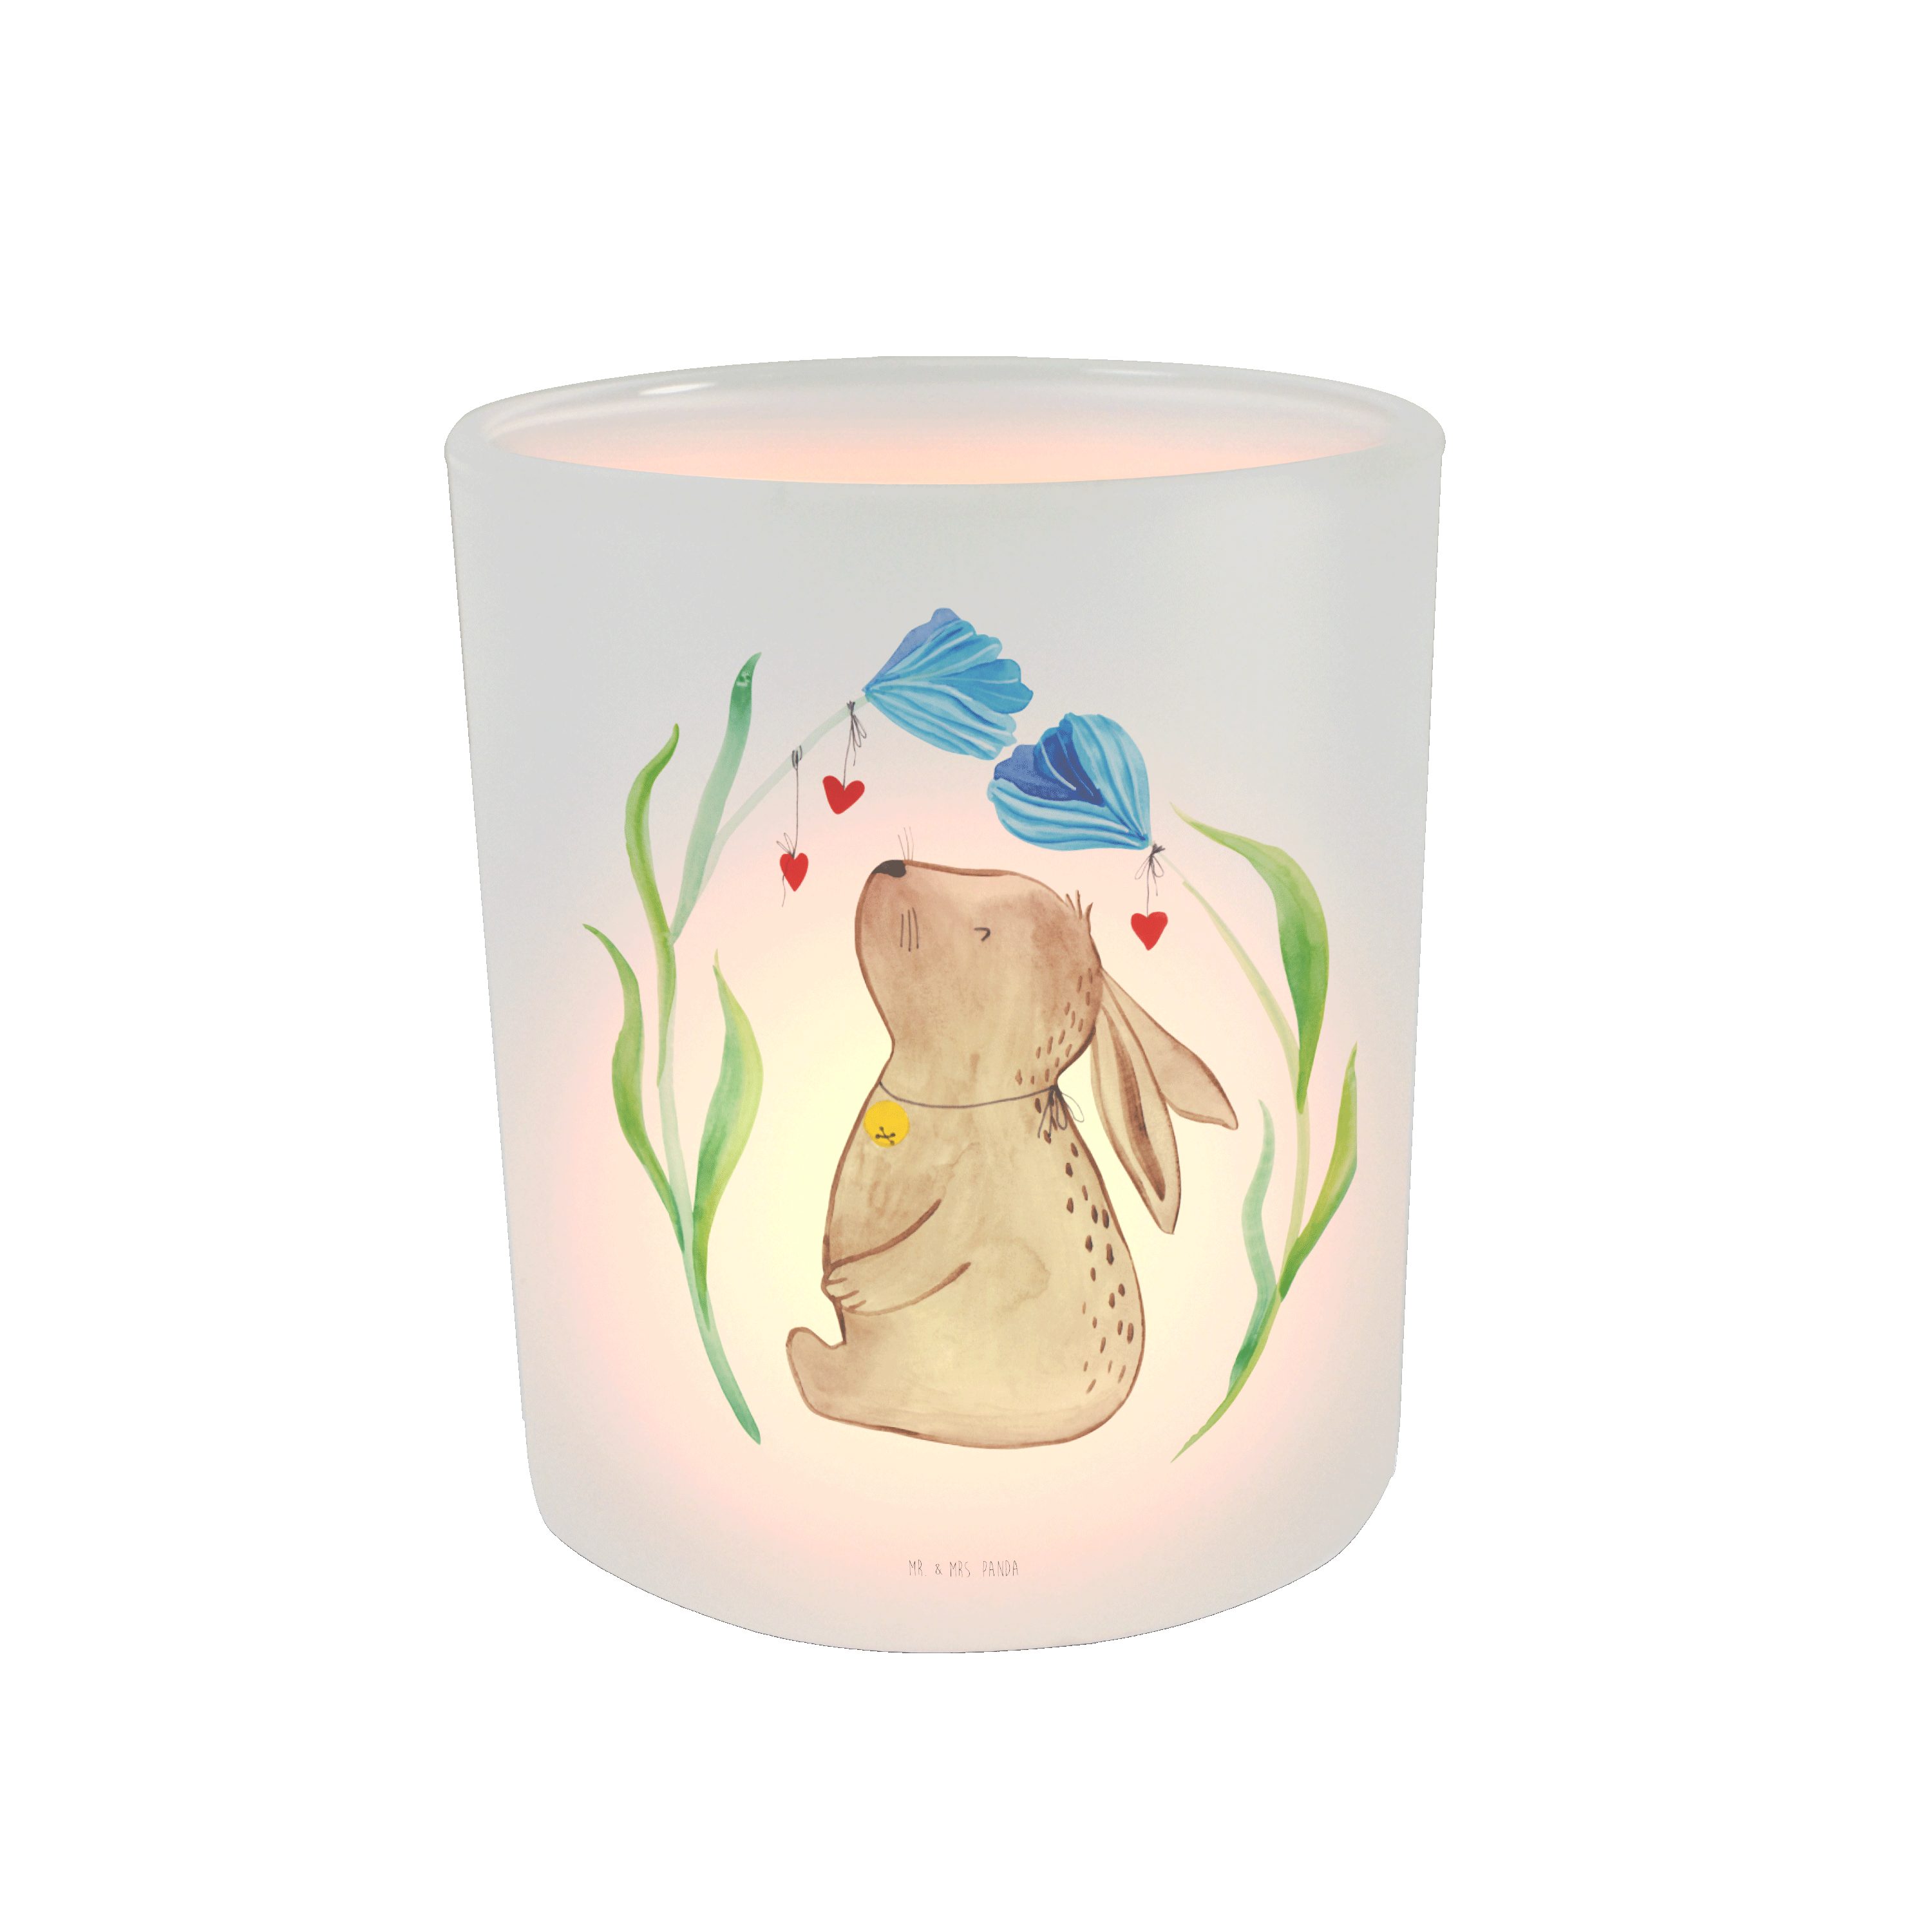 Mr. & Mrs. Panda Windlicht Hase Blume - Transparent - Geschenk, Kerzenglas, Kaninchen, Teelichth (1 St)